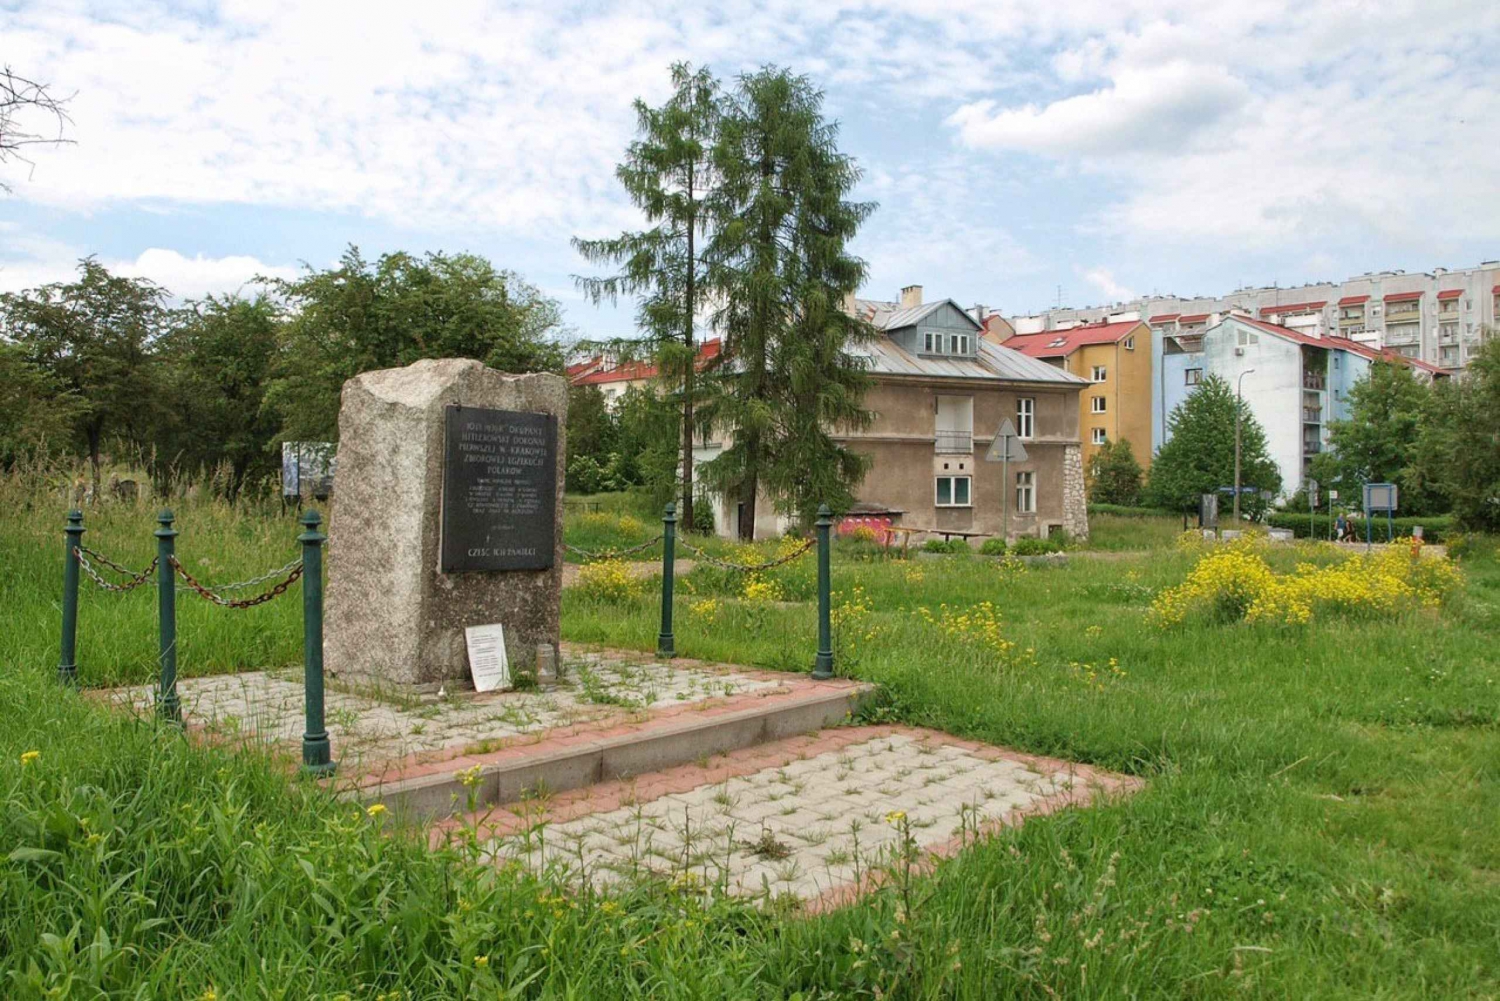 Krakow: Plaszow Concentration Camp Walking Tour